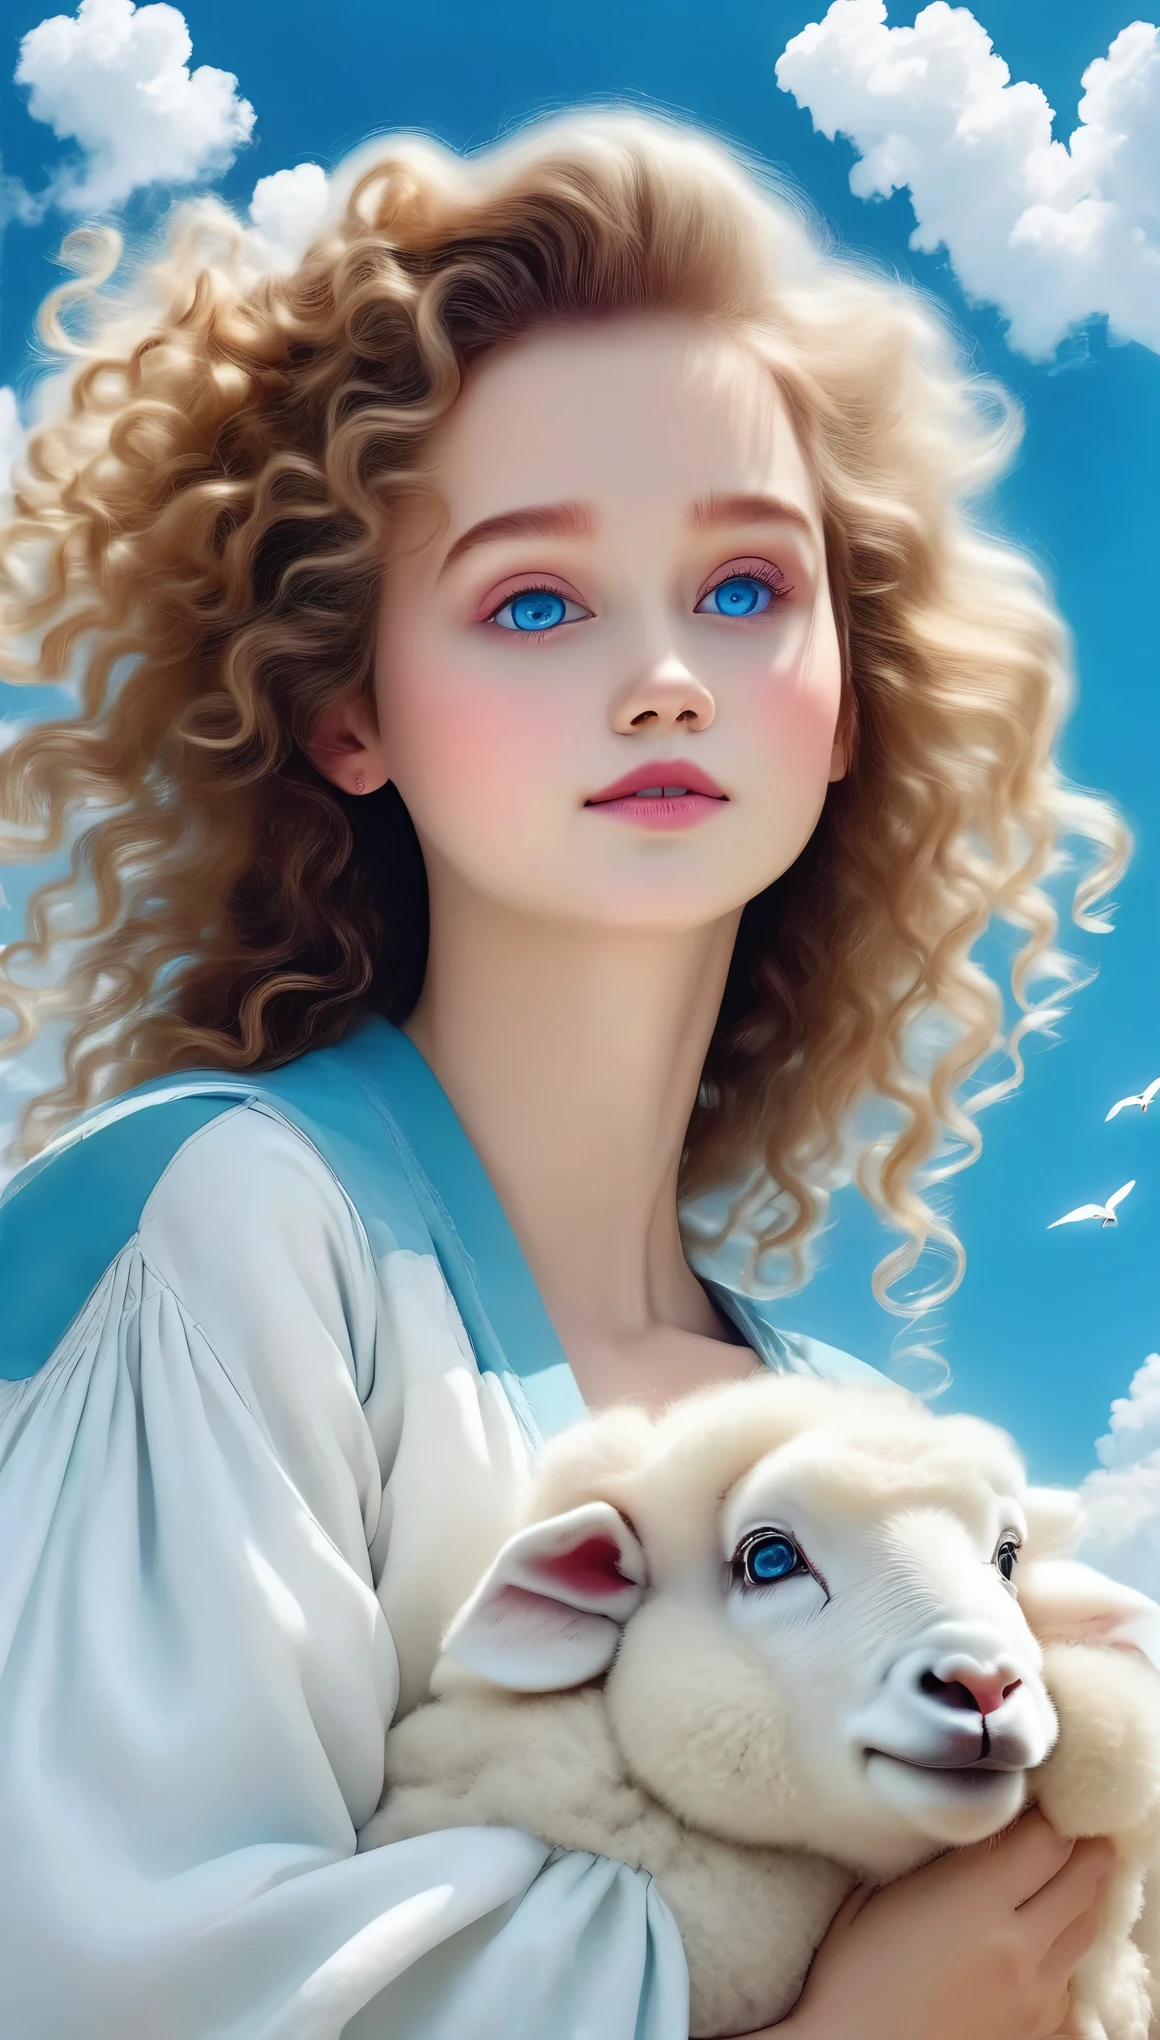 1 garota,pássaro,lindos olhos azuis detalhados,Nuvem,cabelo encaracolado,ar livre,guarnição peluda,pom pom(roupas),ovelha,céu,Sozinho,tronco,Cabelo ondulado,(melhor qualidade,4K,8K,alta resolução,obra de arte:1.2),Ultra-detalhado,(realista,photorealista,photo-realista:1.37),lindo retrato,fantasia,realismo mágico,cores vibrantes,iluminação dramática